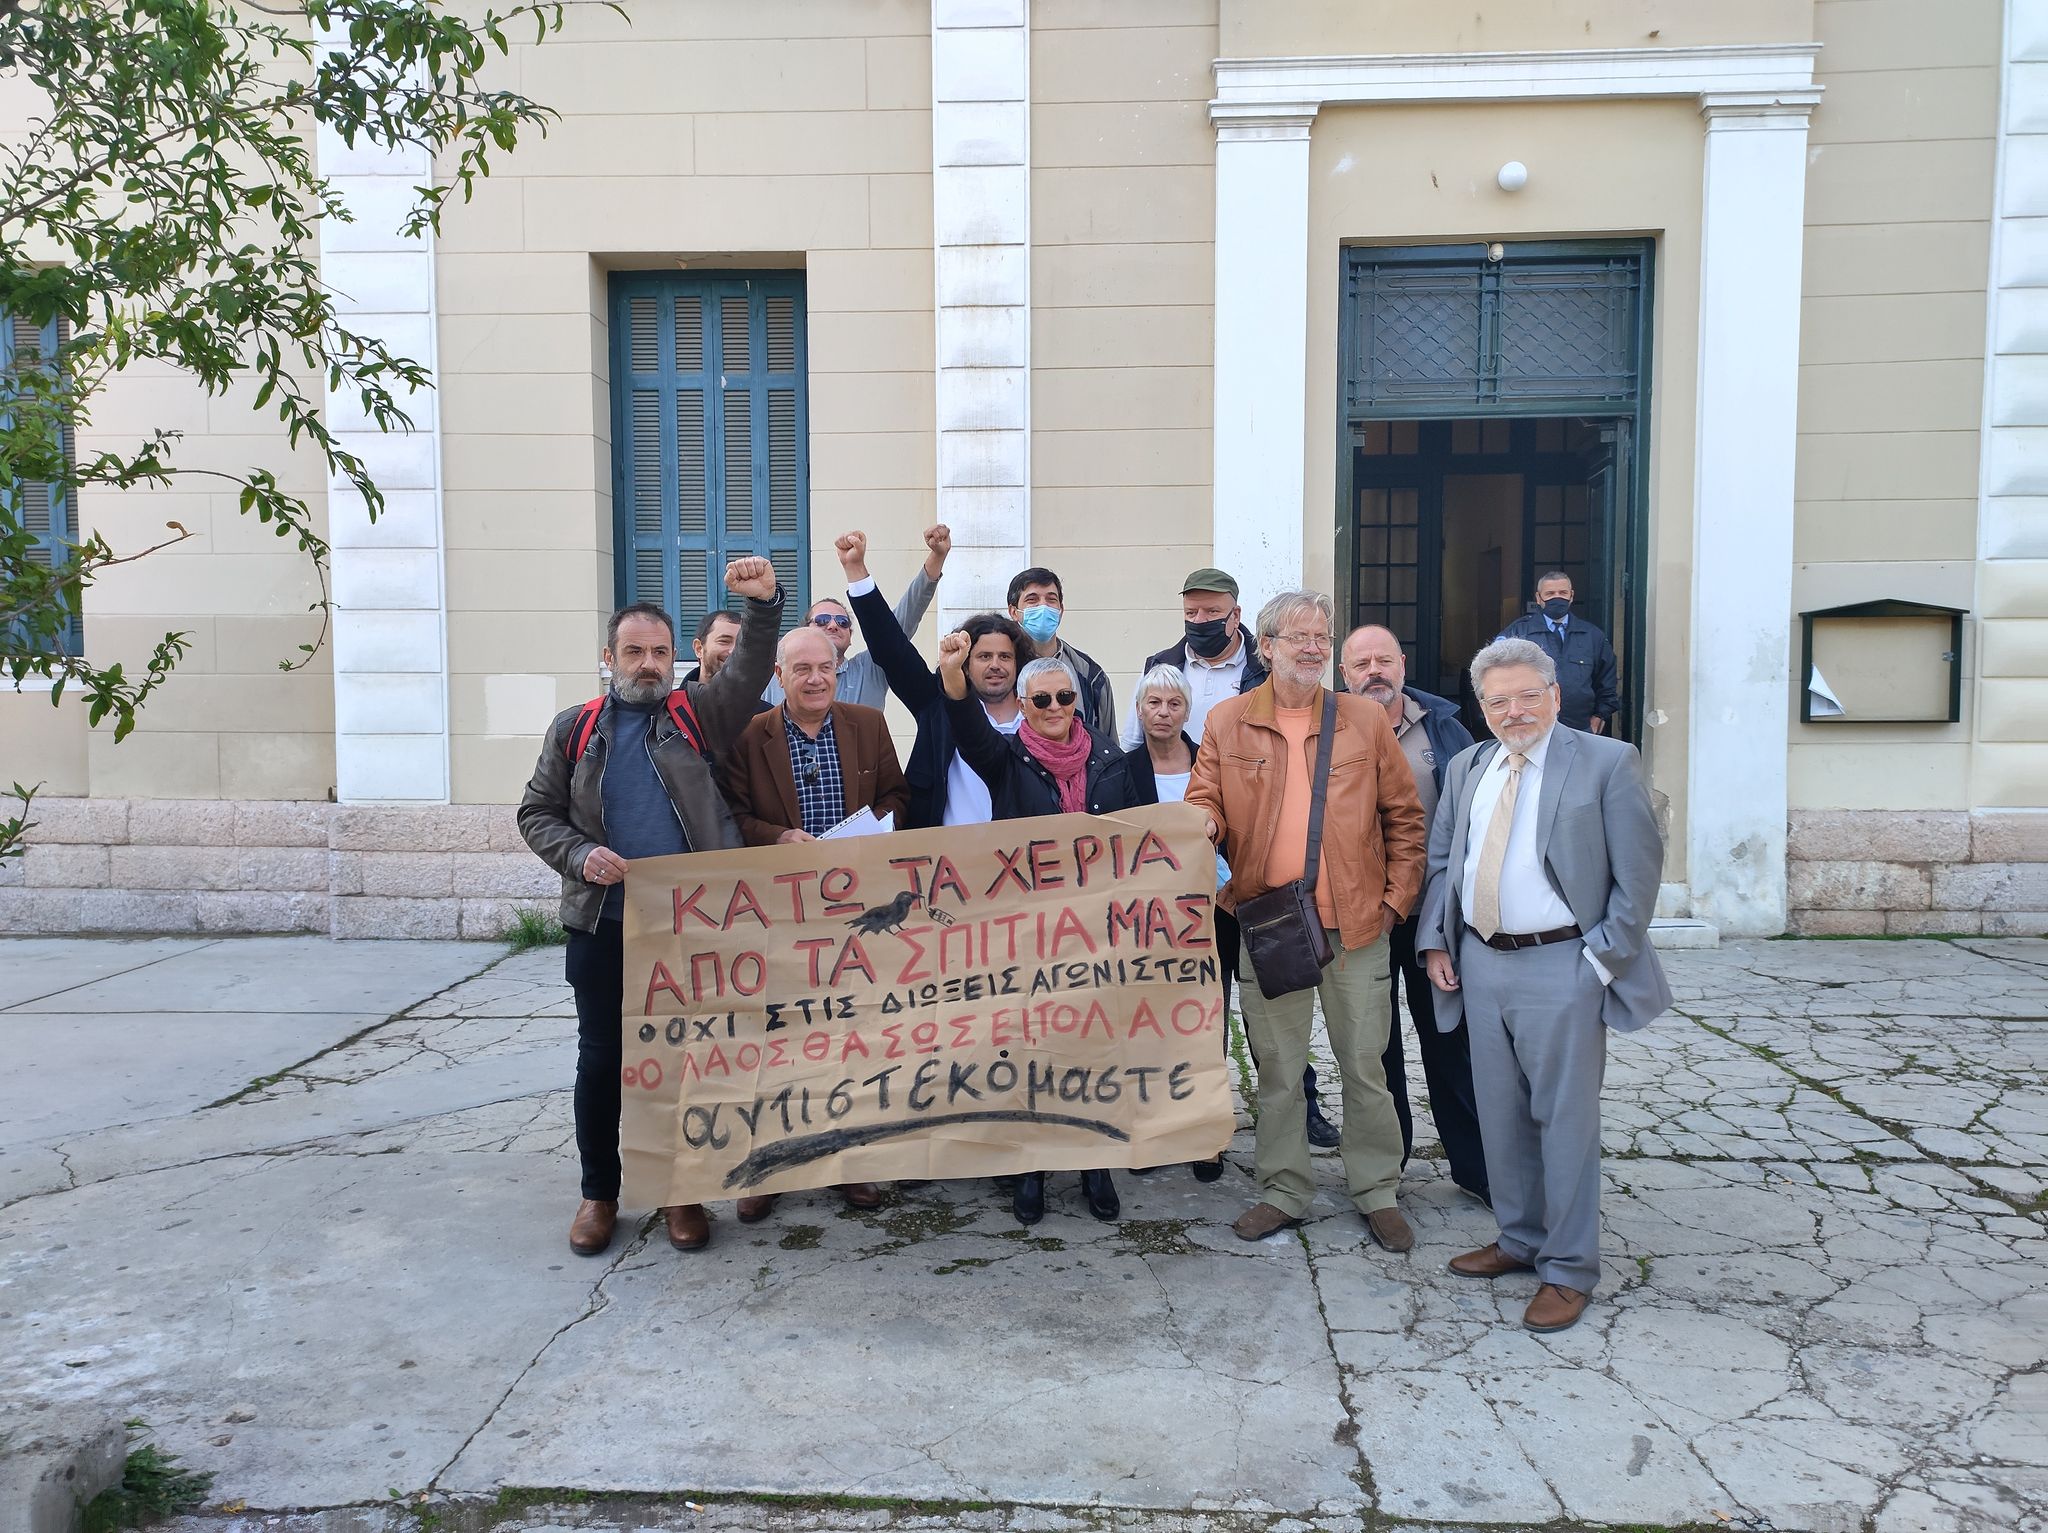 Ναύπλιο: Aναβλήθηκε η δίκη των 19 για την παρακώληση πλειστηριασμών